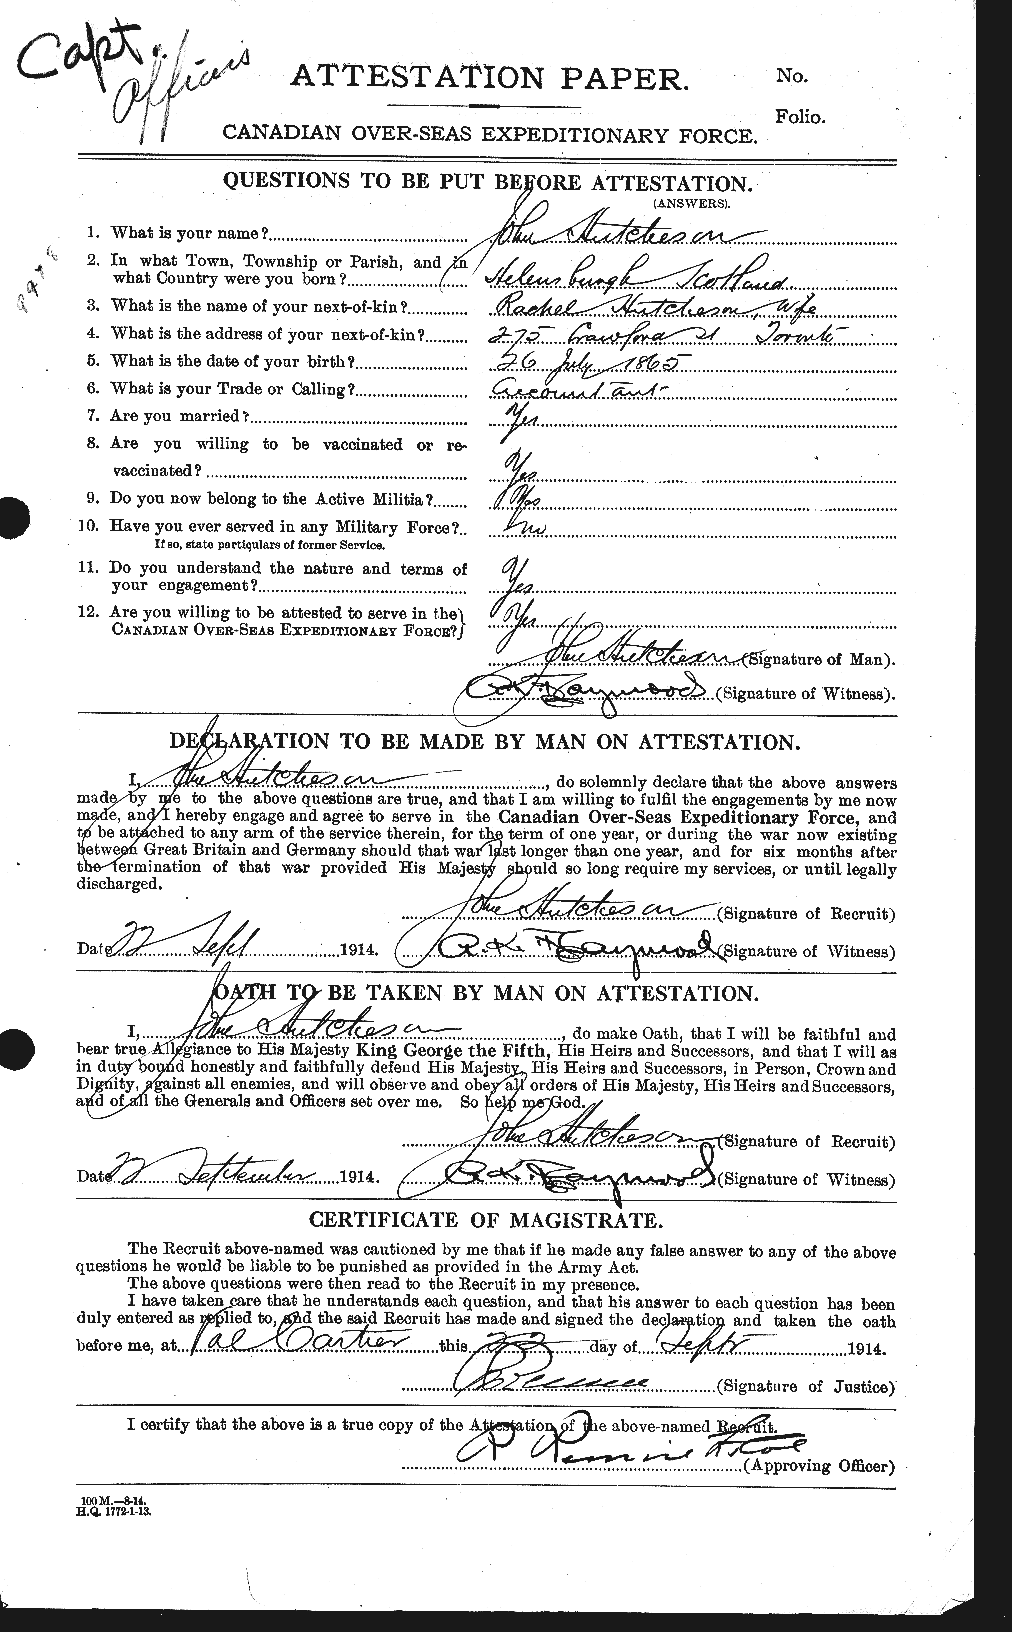 Dossiers du Personnel de la Première Guerre mondiale - CEC 407976a